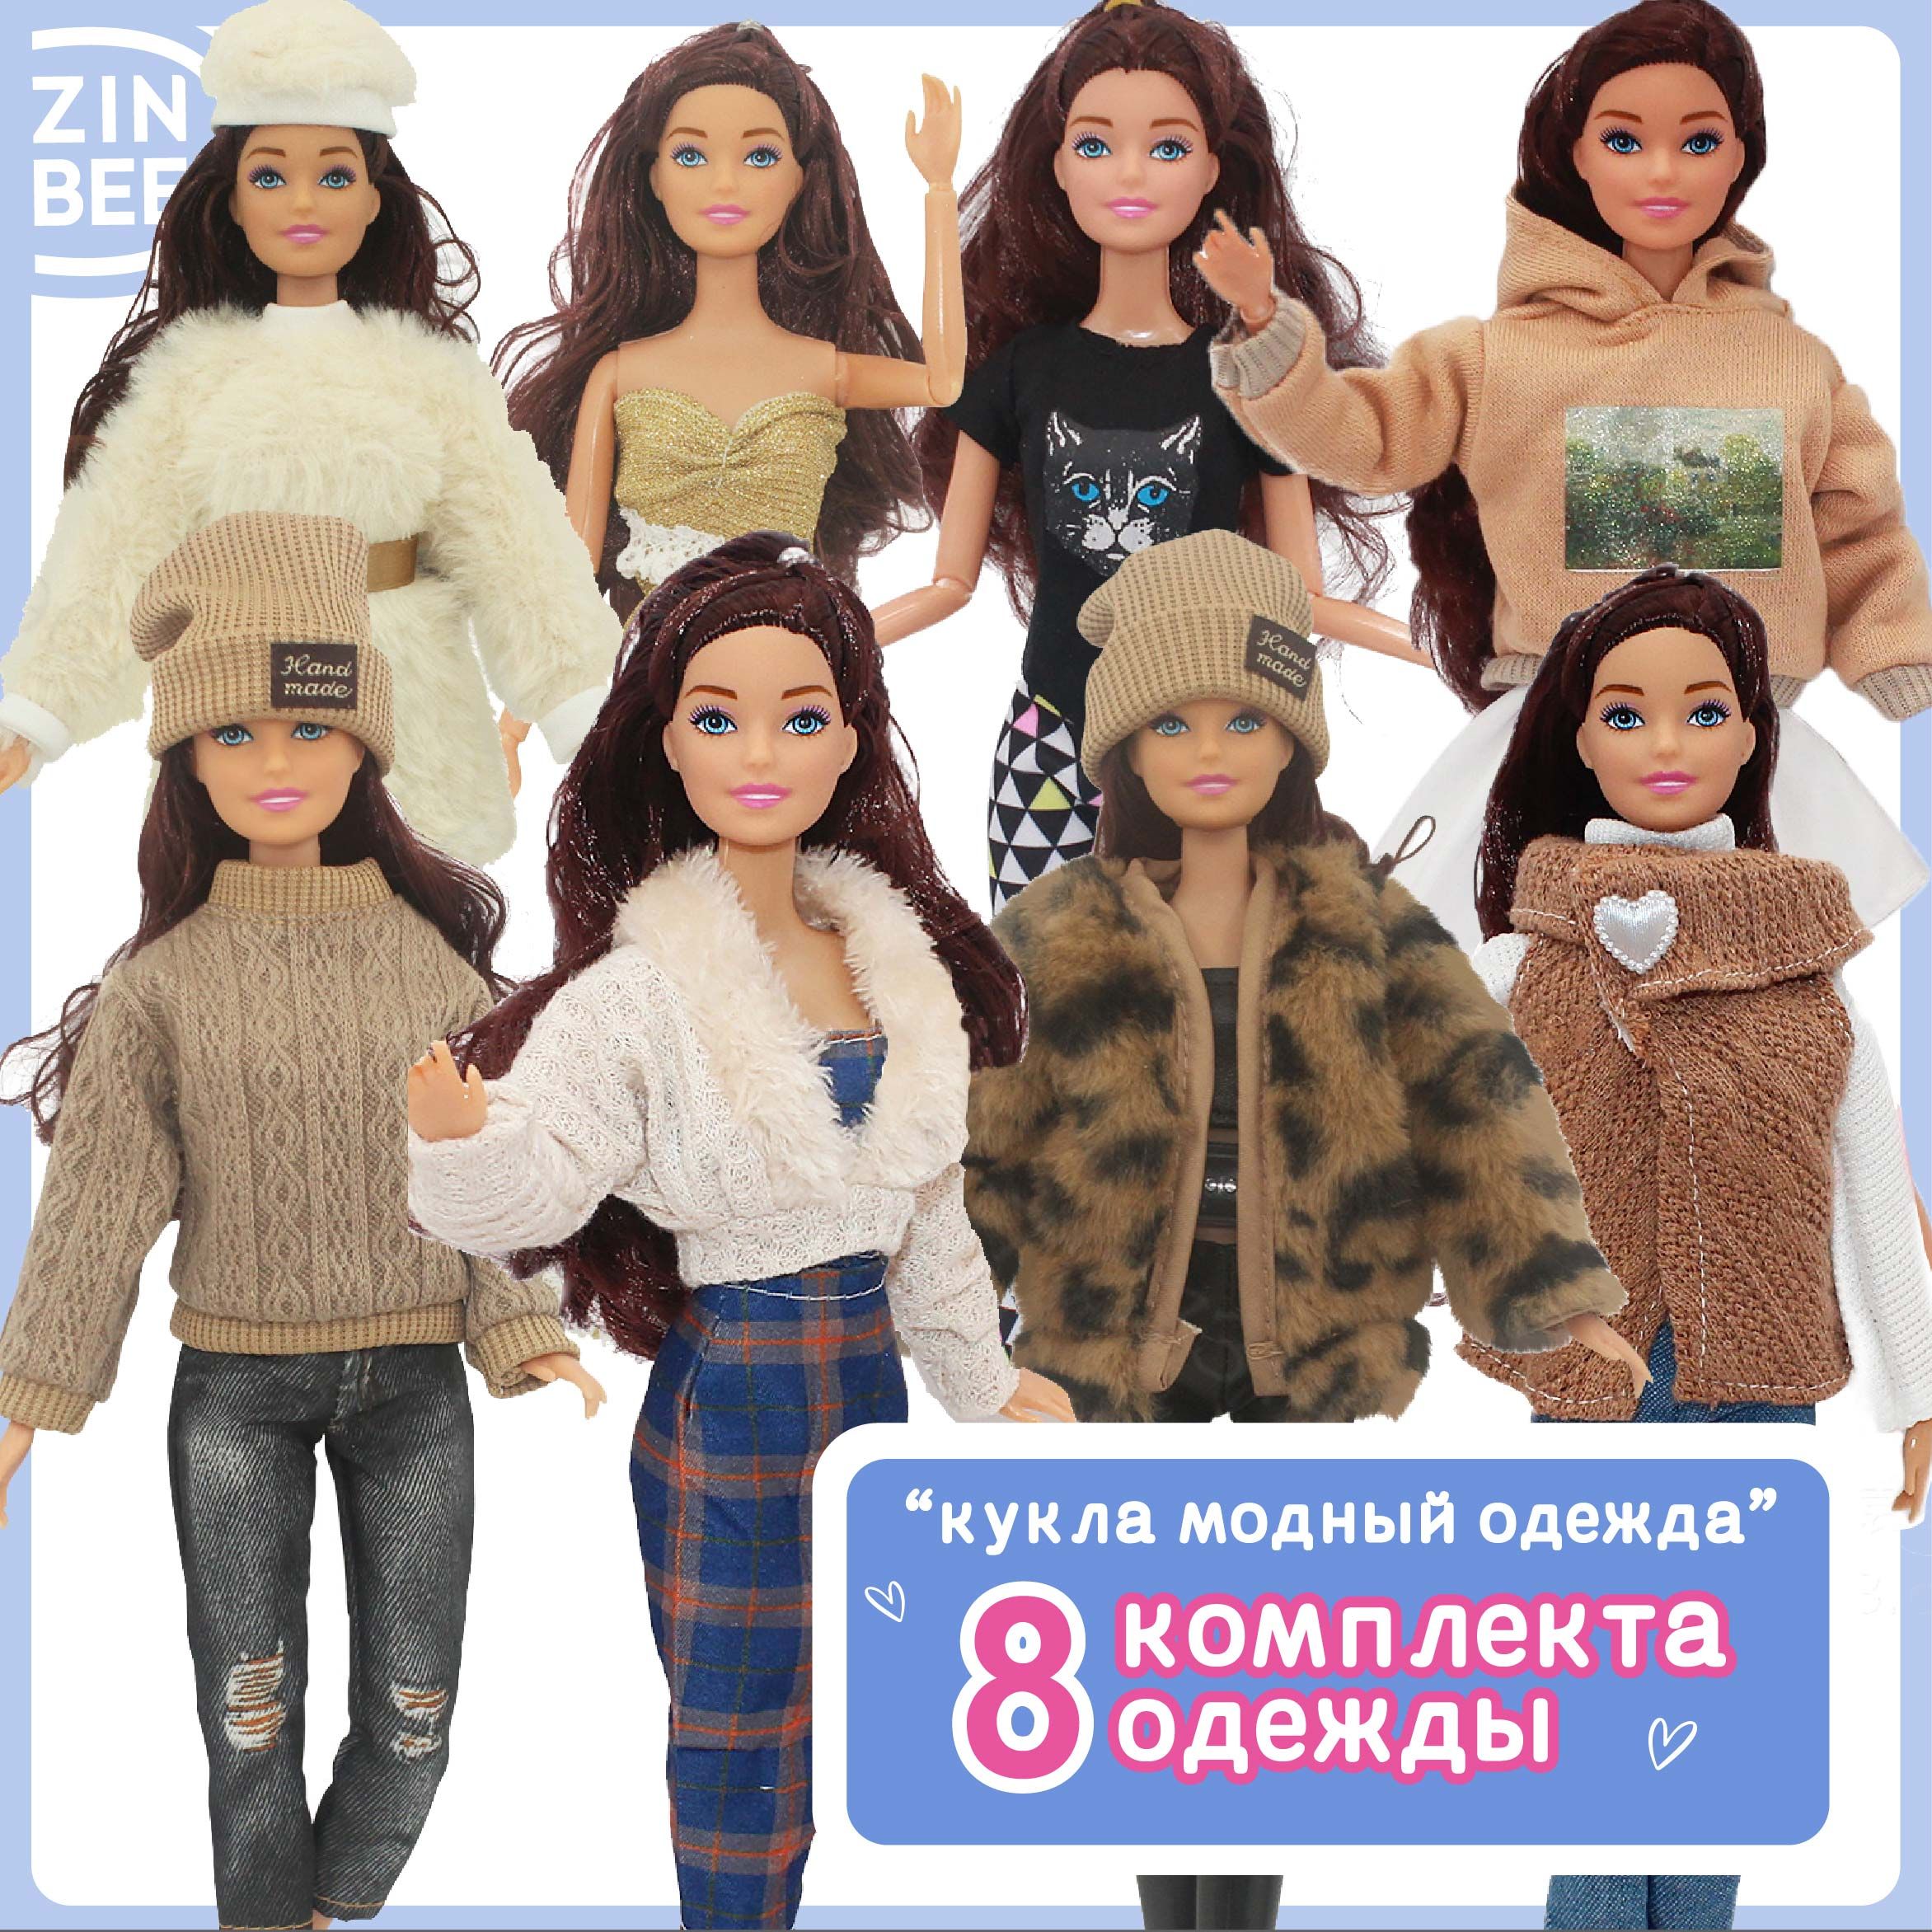 Шьём одежду для Барби | ВКонтакте